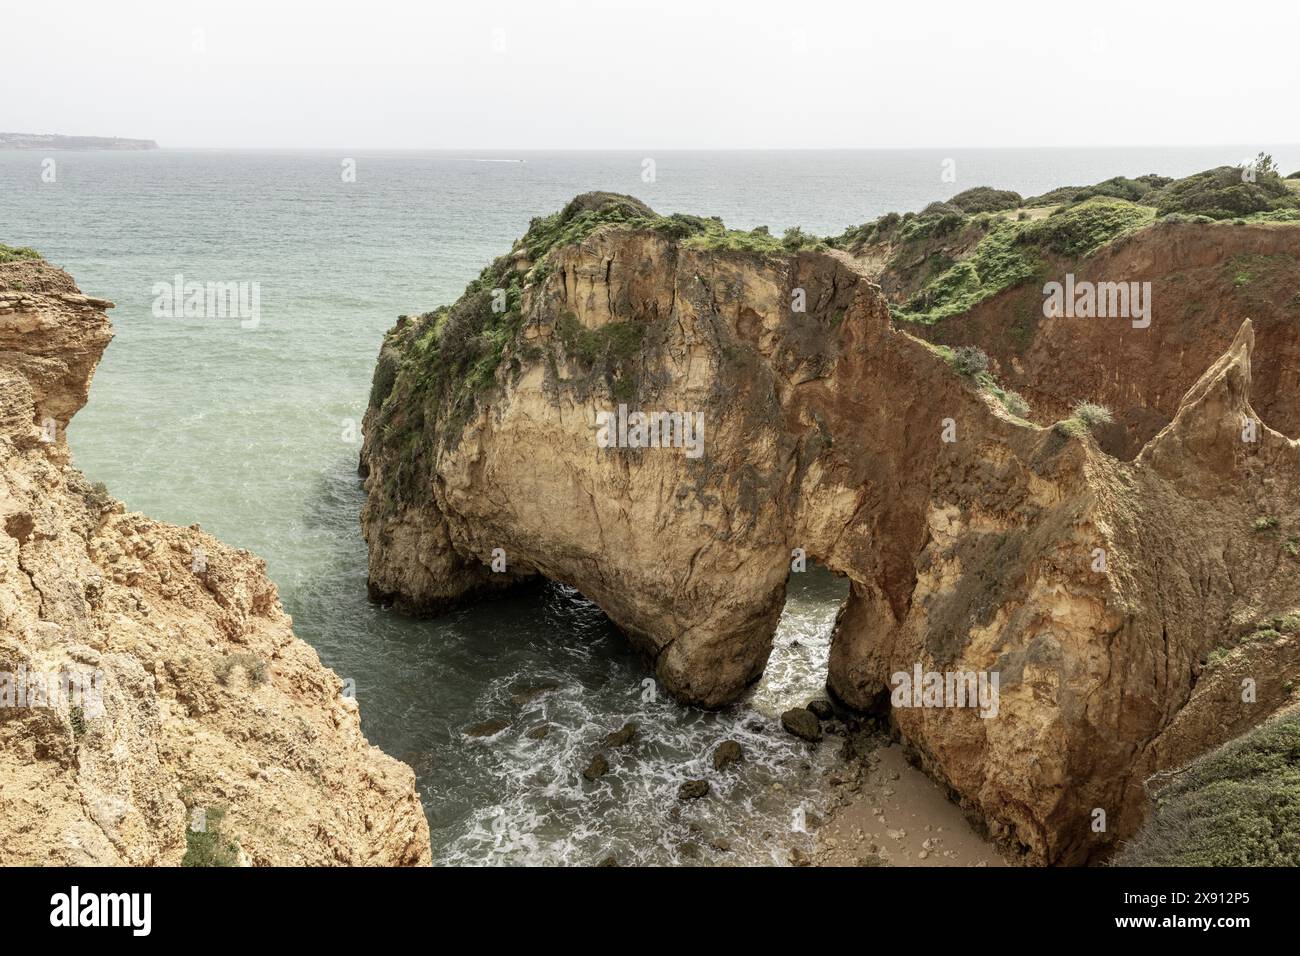 Atemberaubender Blick auf die Felsformationen und Meeresbögen der Küste in Portimao, Portugal. Die zerklüfteten Klippen und die verstreuten Meeresstapel schaffen ein dramatisches Bild Stockfoto